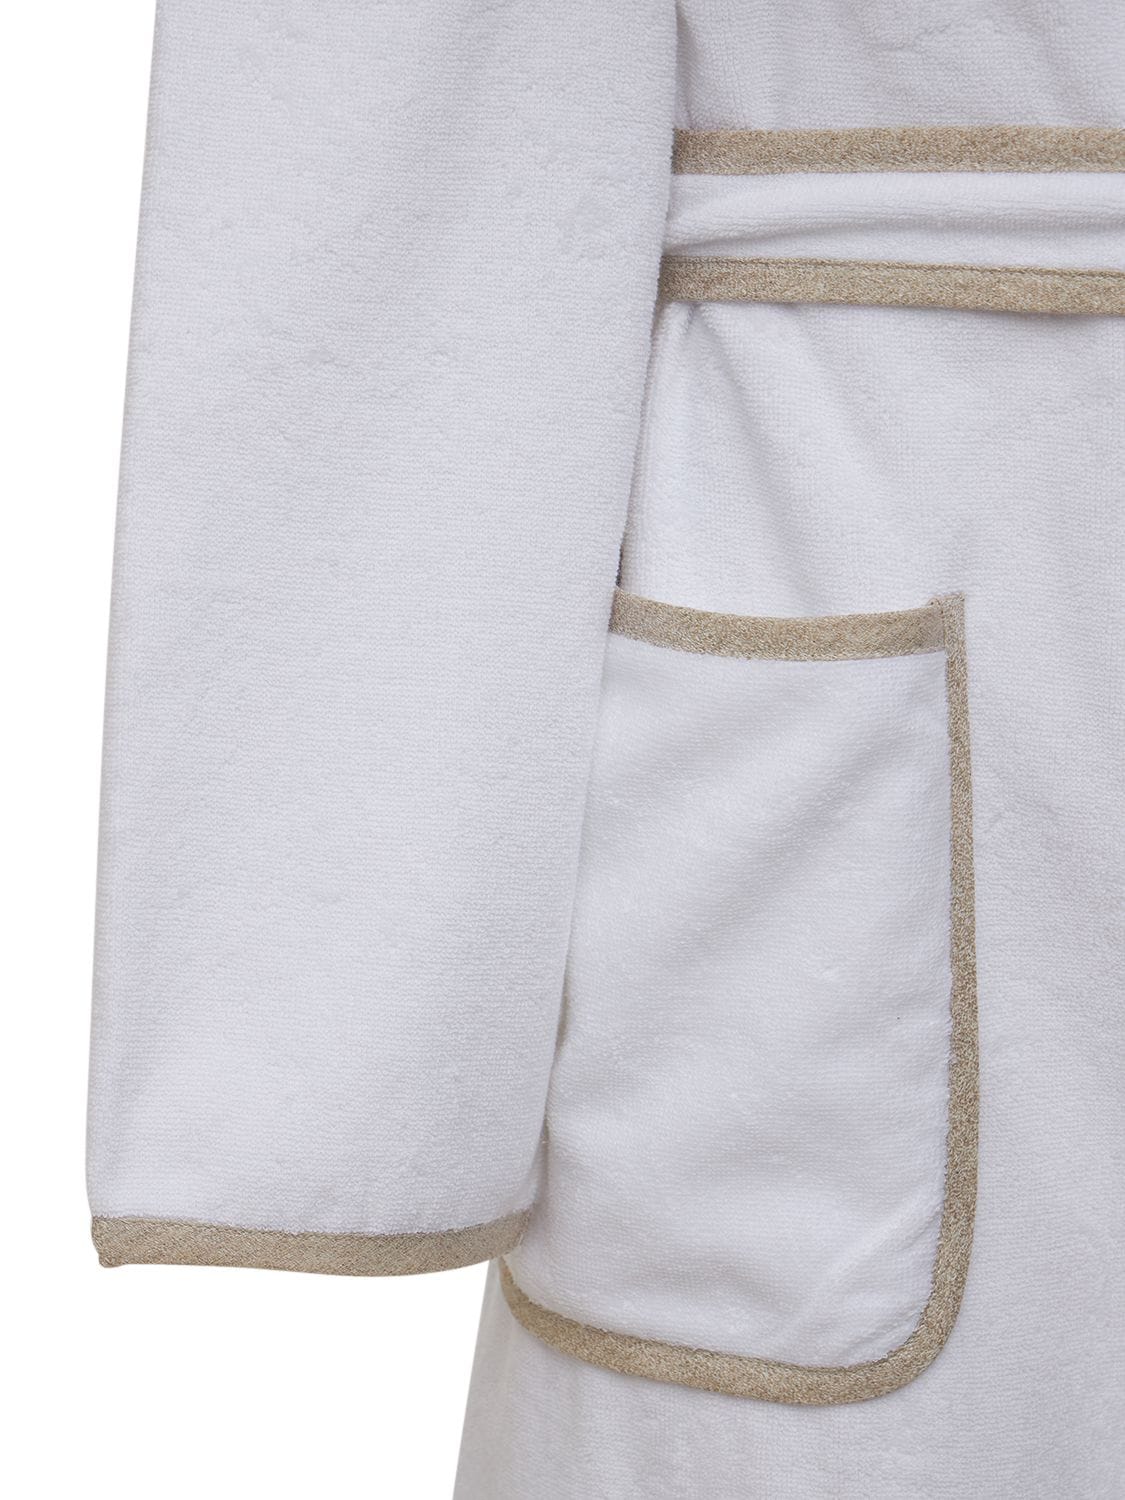 Frette Light Terrycloth & Linen Crepe Bathrobe In White,beige | ModeSens